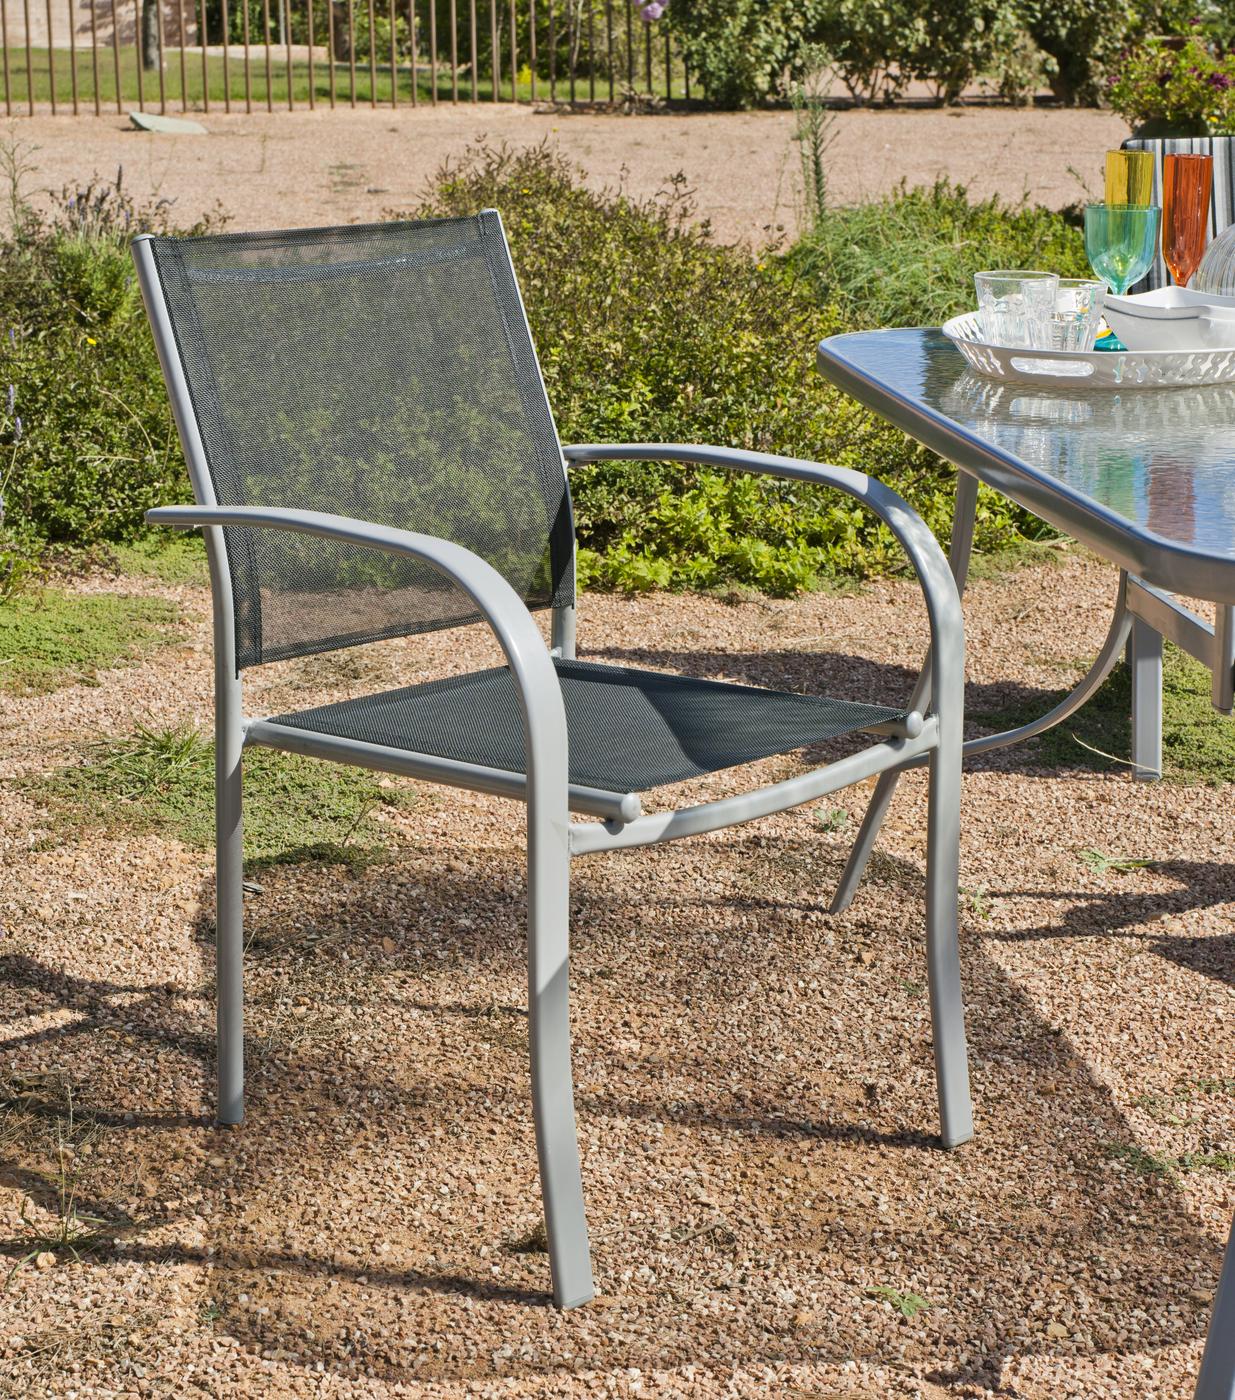 Conjunto Acero Antillas 90-4 - Conjunto de acero color plata: mesa redonda de 90 cm. Con tablero de cristal templado + 4 sillones de acero y textilen